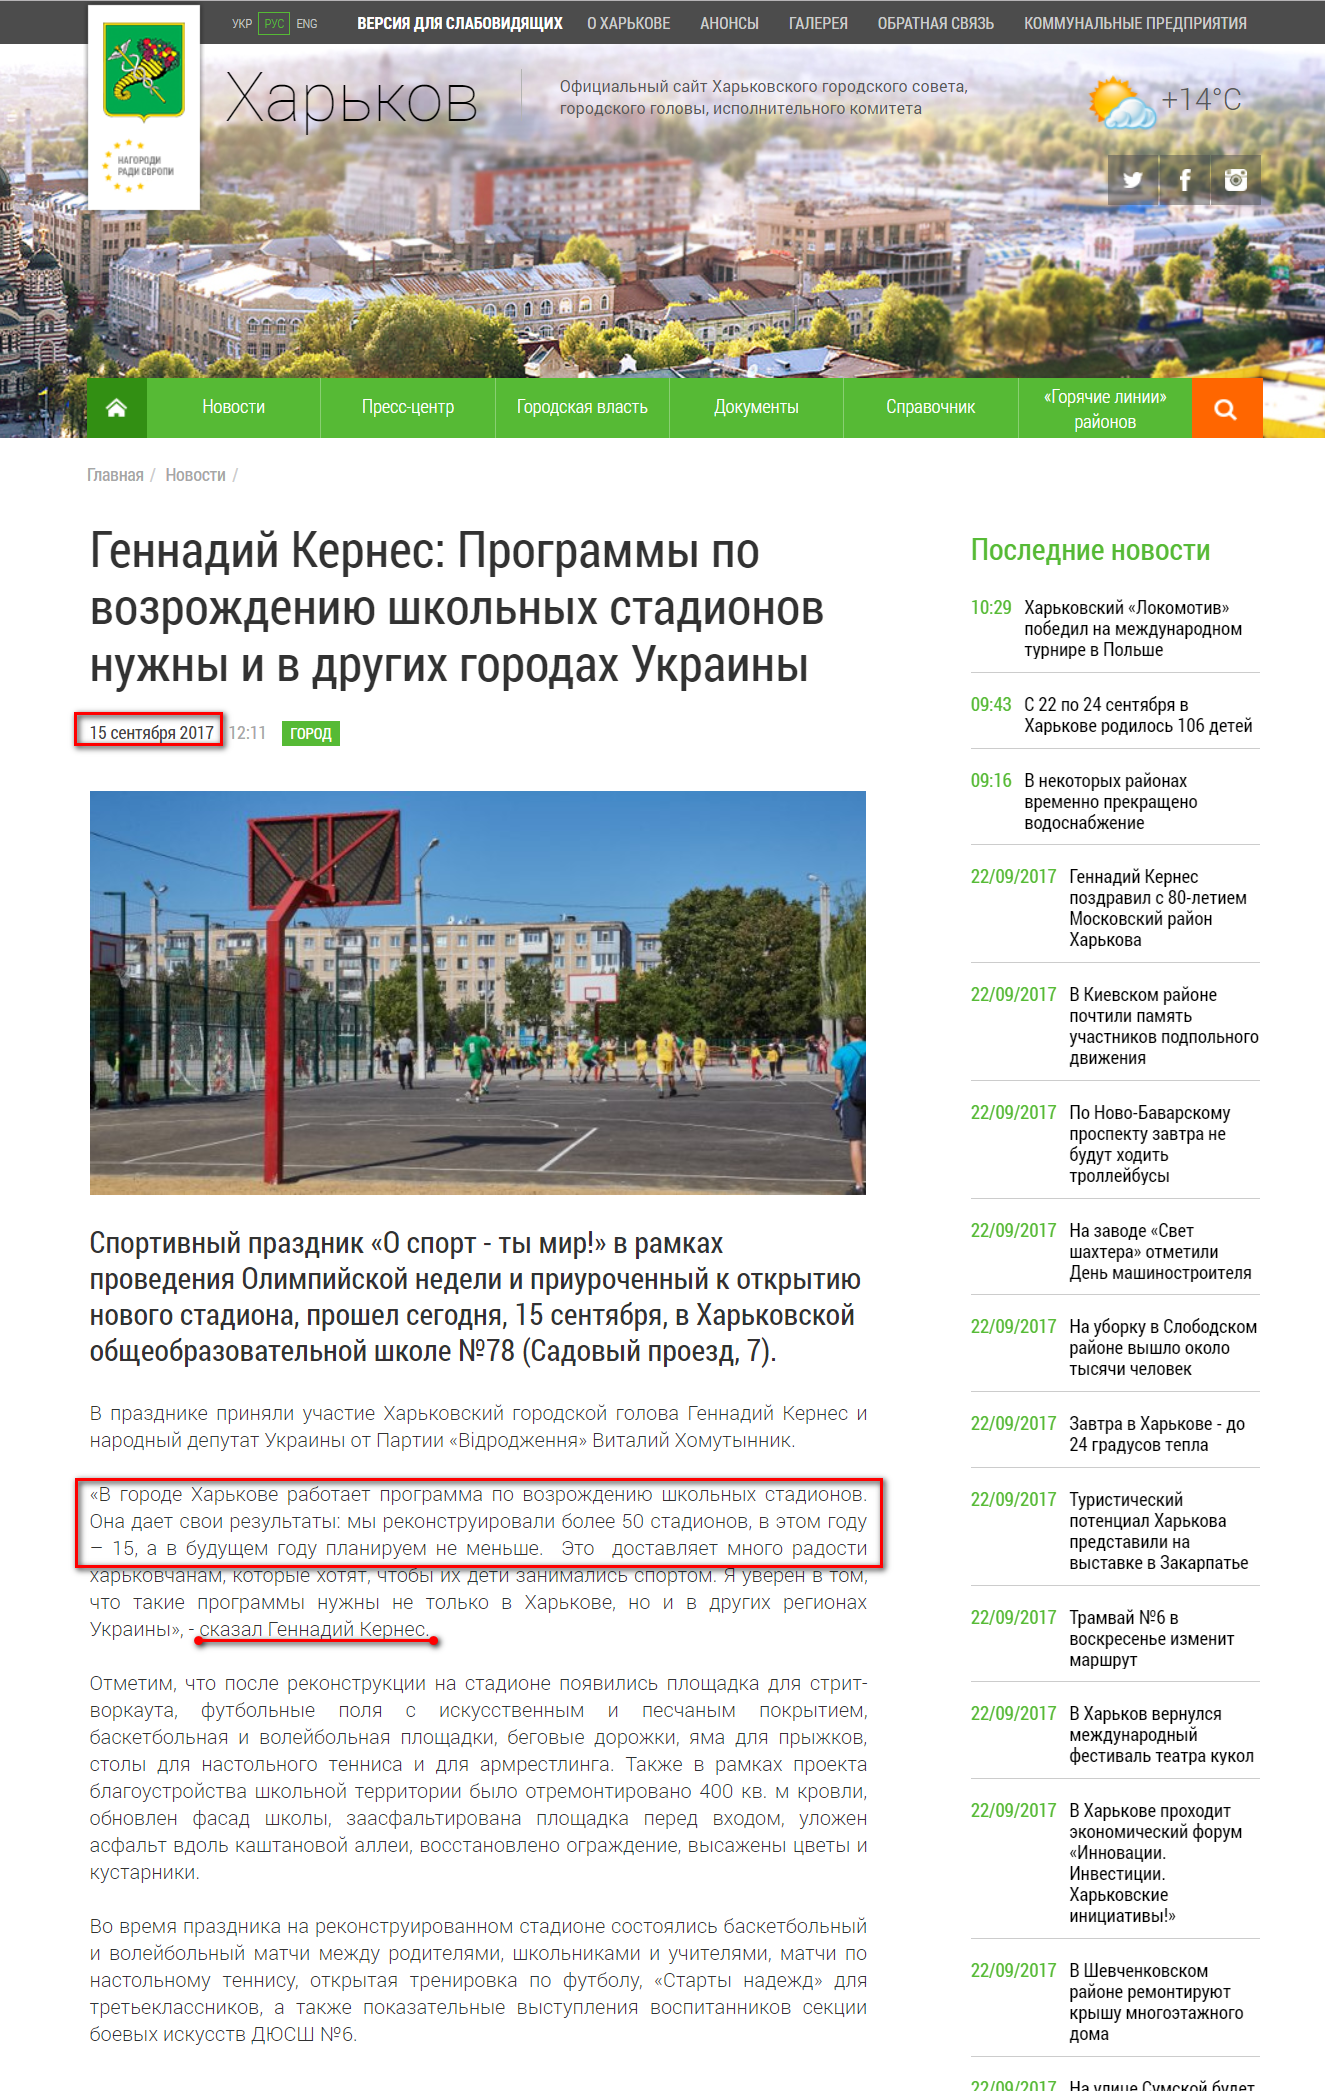 http://www.city.kharkov.ua/ru/publication/gennadiy-kernes-programi-z-vidrodzhennya-shkilnikh-stadioniv-potribni-i-v-inshikh-mistakh-ukraini-36618.html